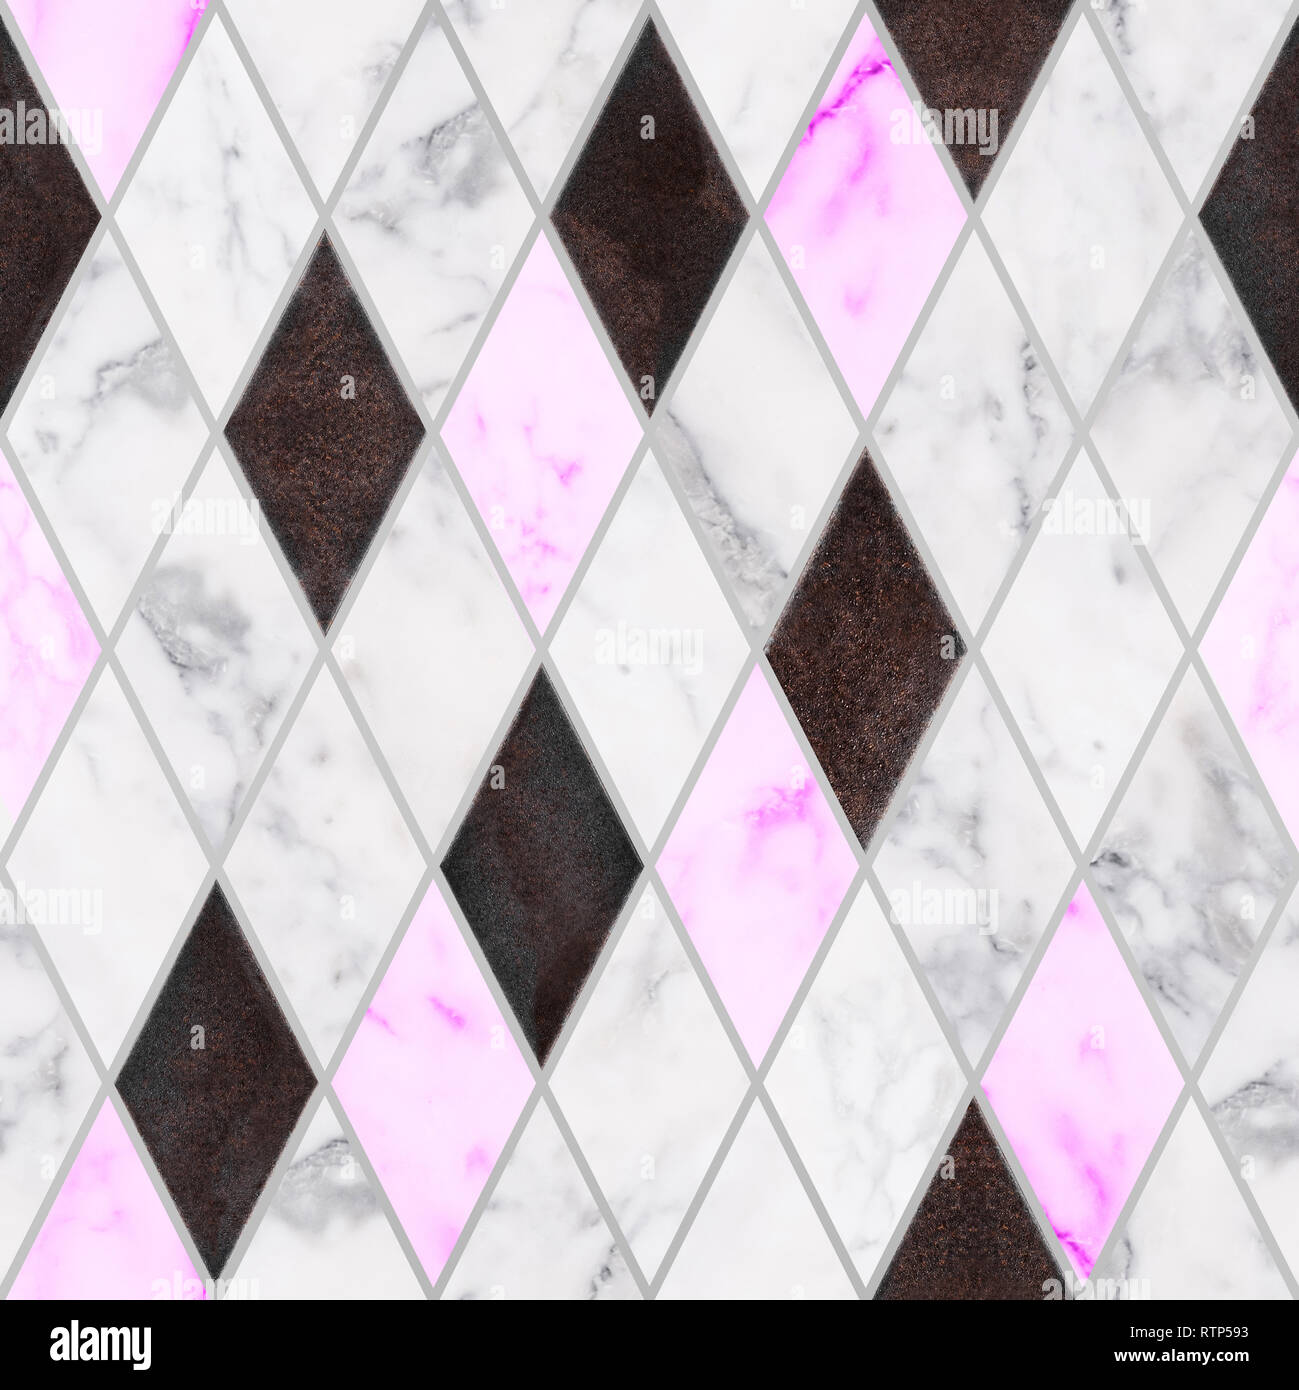 Perfecta piedra de mármol blanco y rosa con textura de metal oxidado en el rhombus patrón. Adornos de piedra de mármol de lujo Foto de stock